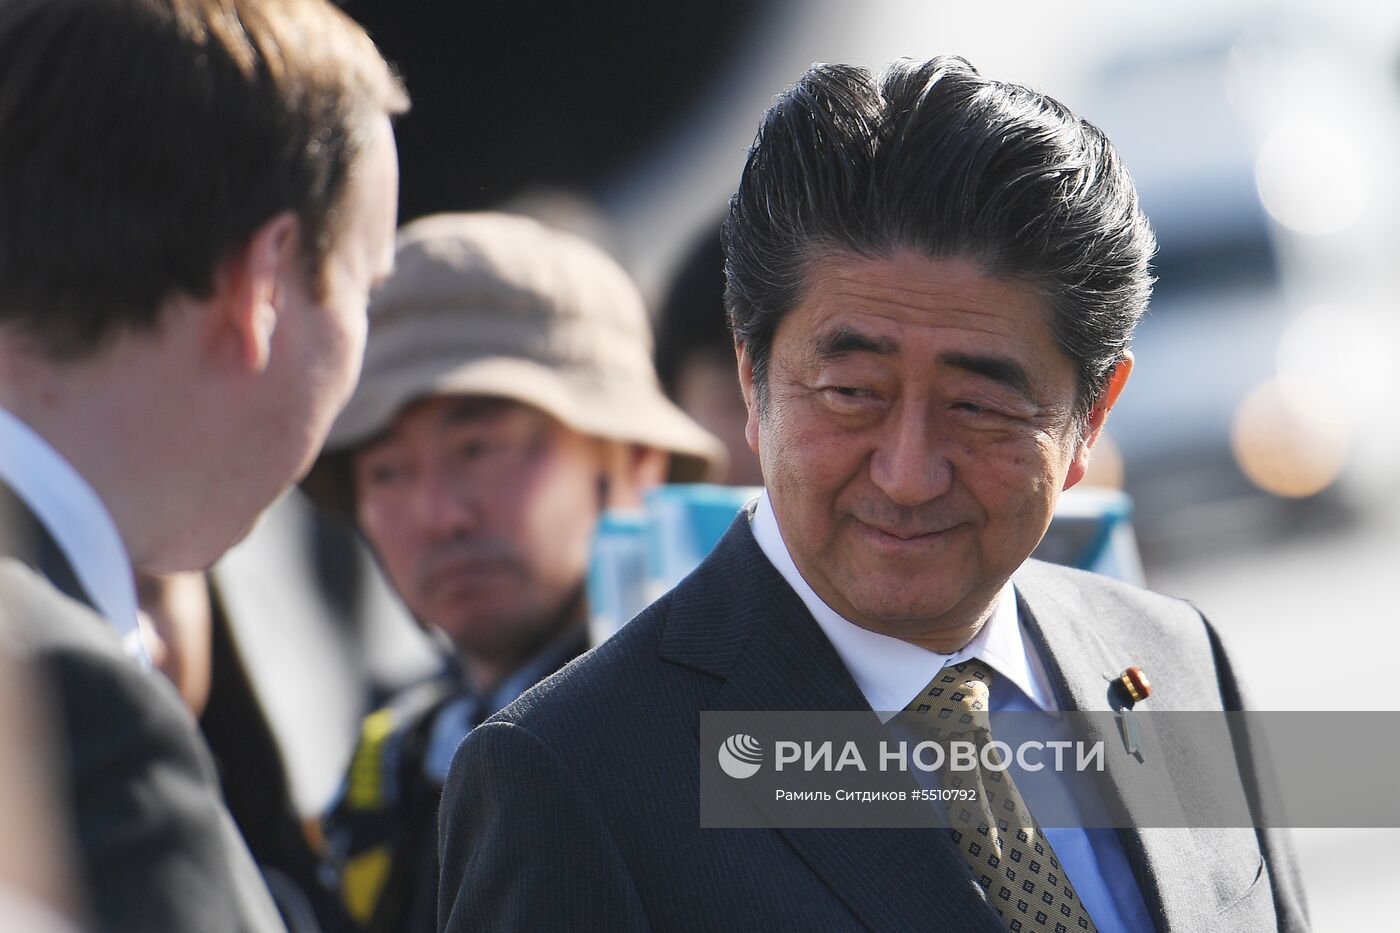 Прилет премьер-министра Японии Синдзо Абэ в Санкт-Петербург